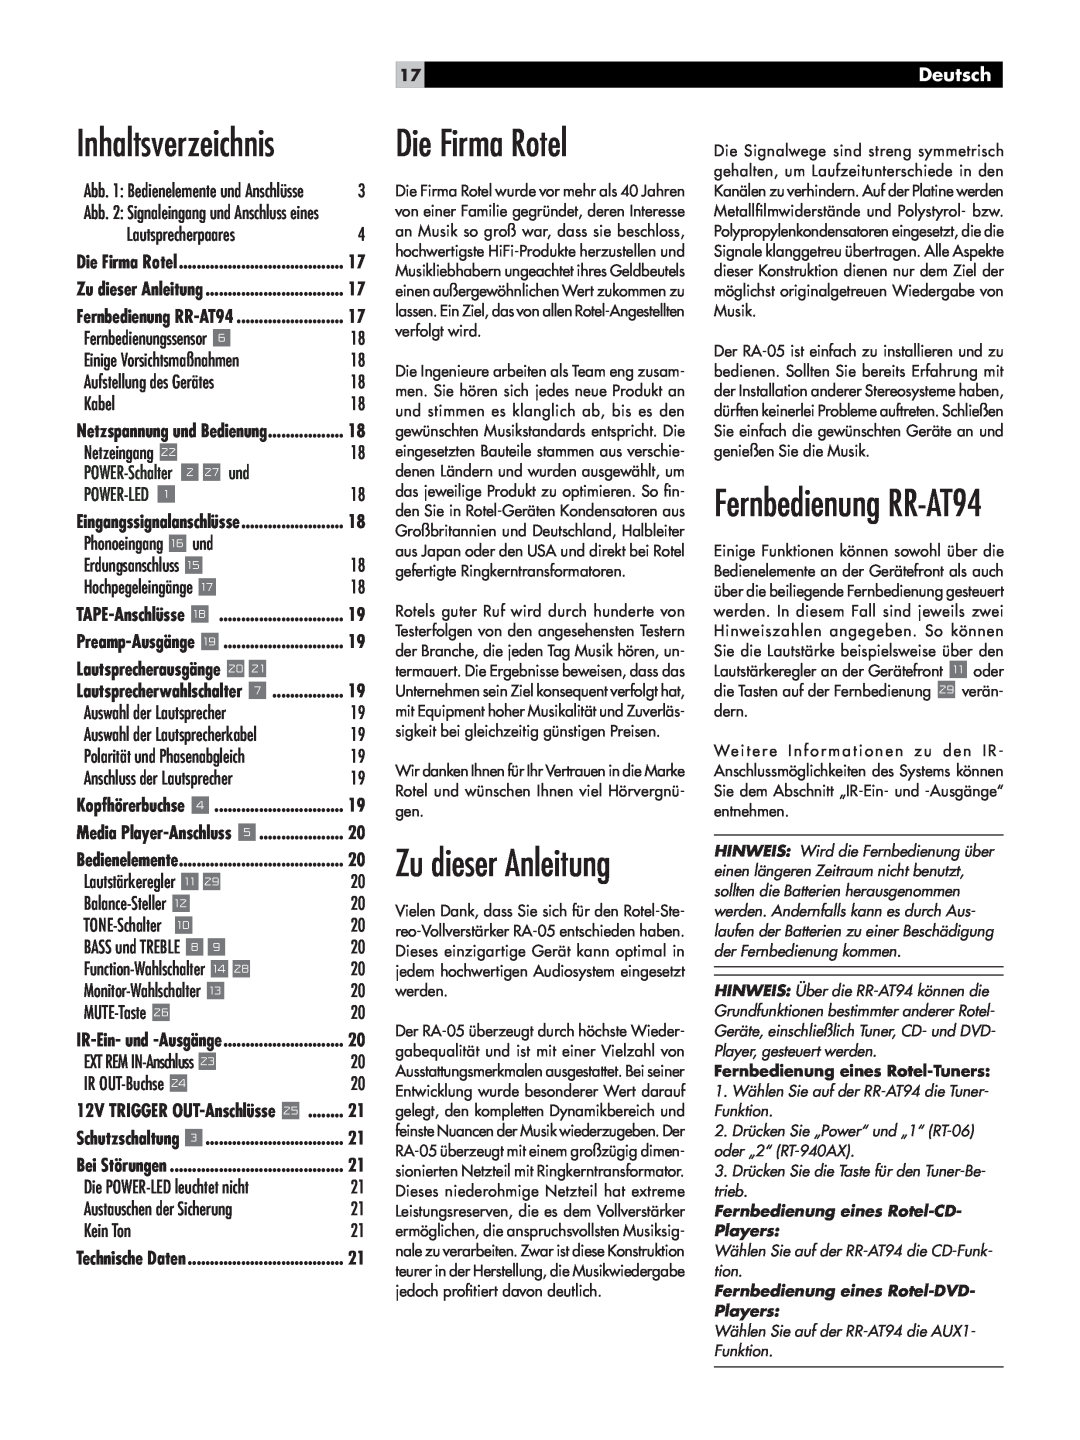 Rotel RA-05 owner manual Die Firma Rotel, Zu dieser Anleitung, Fernbedienung RR-AT94, Inhaltsverzeichnis, Deutsch 